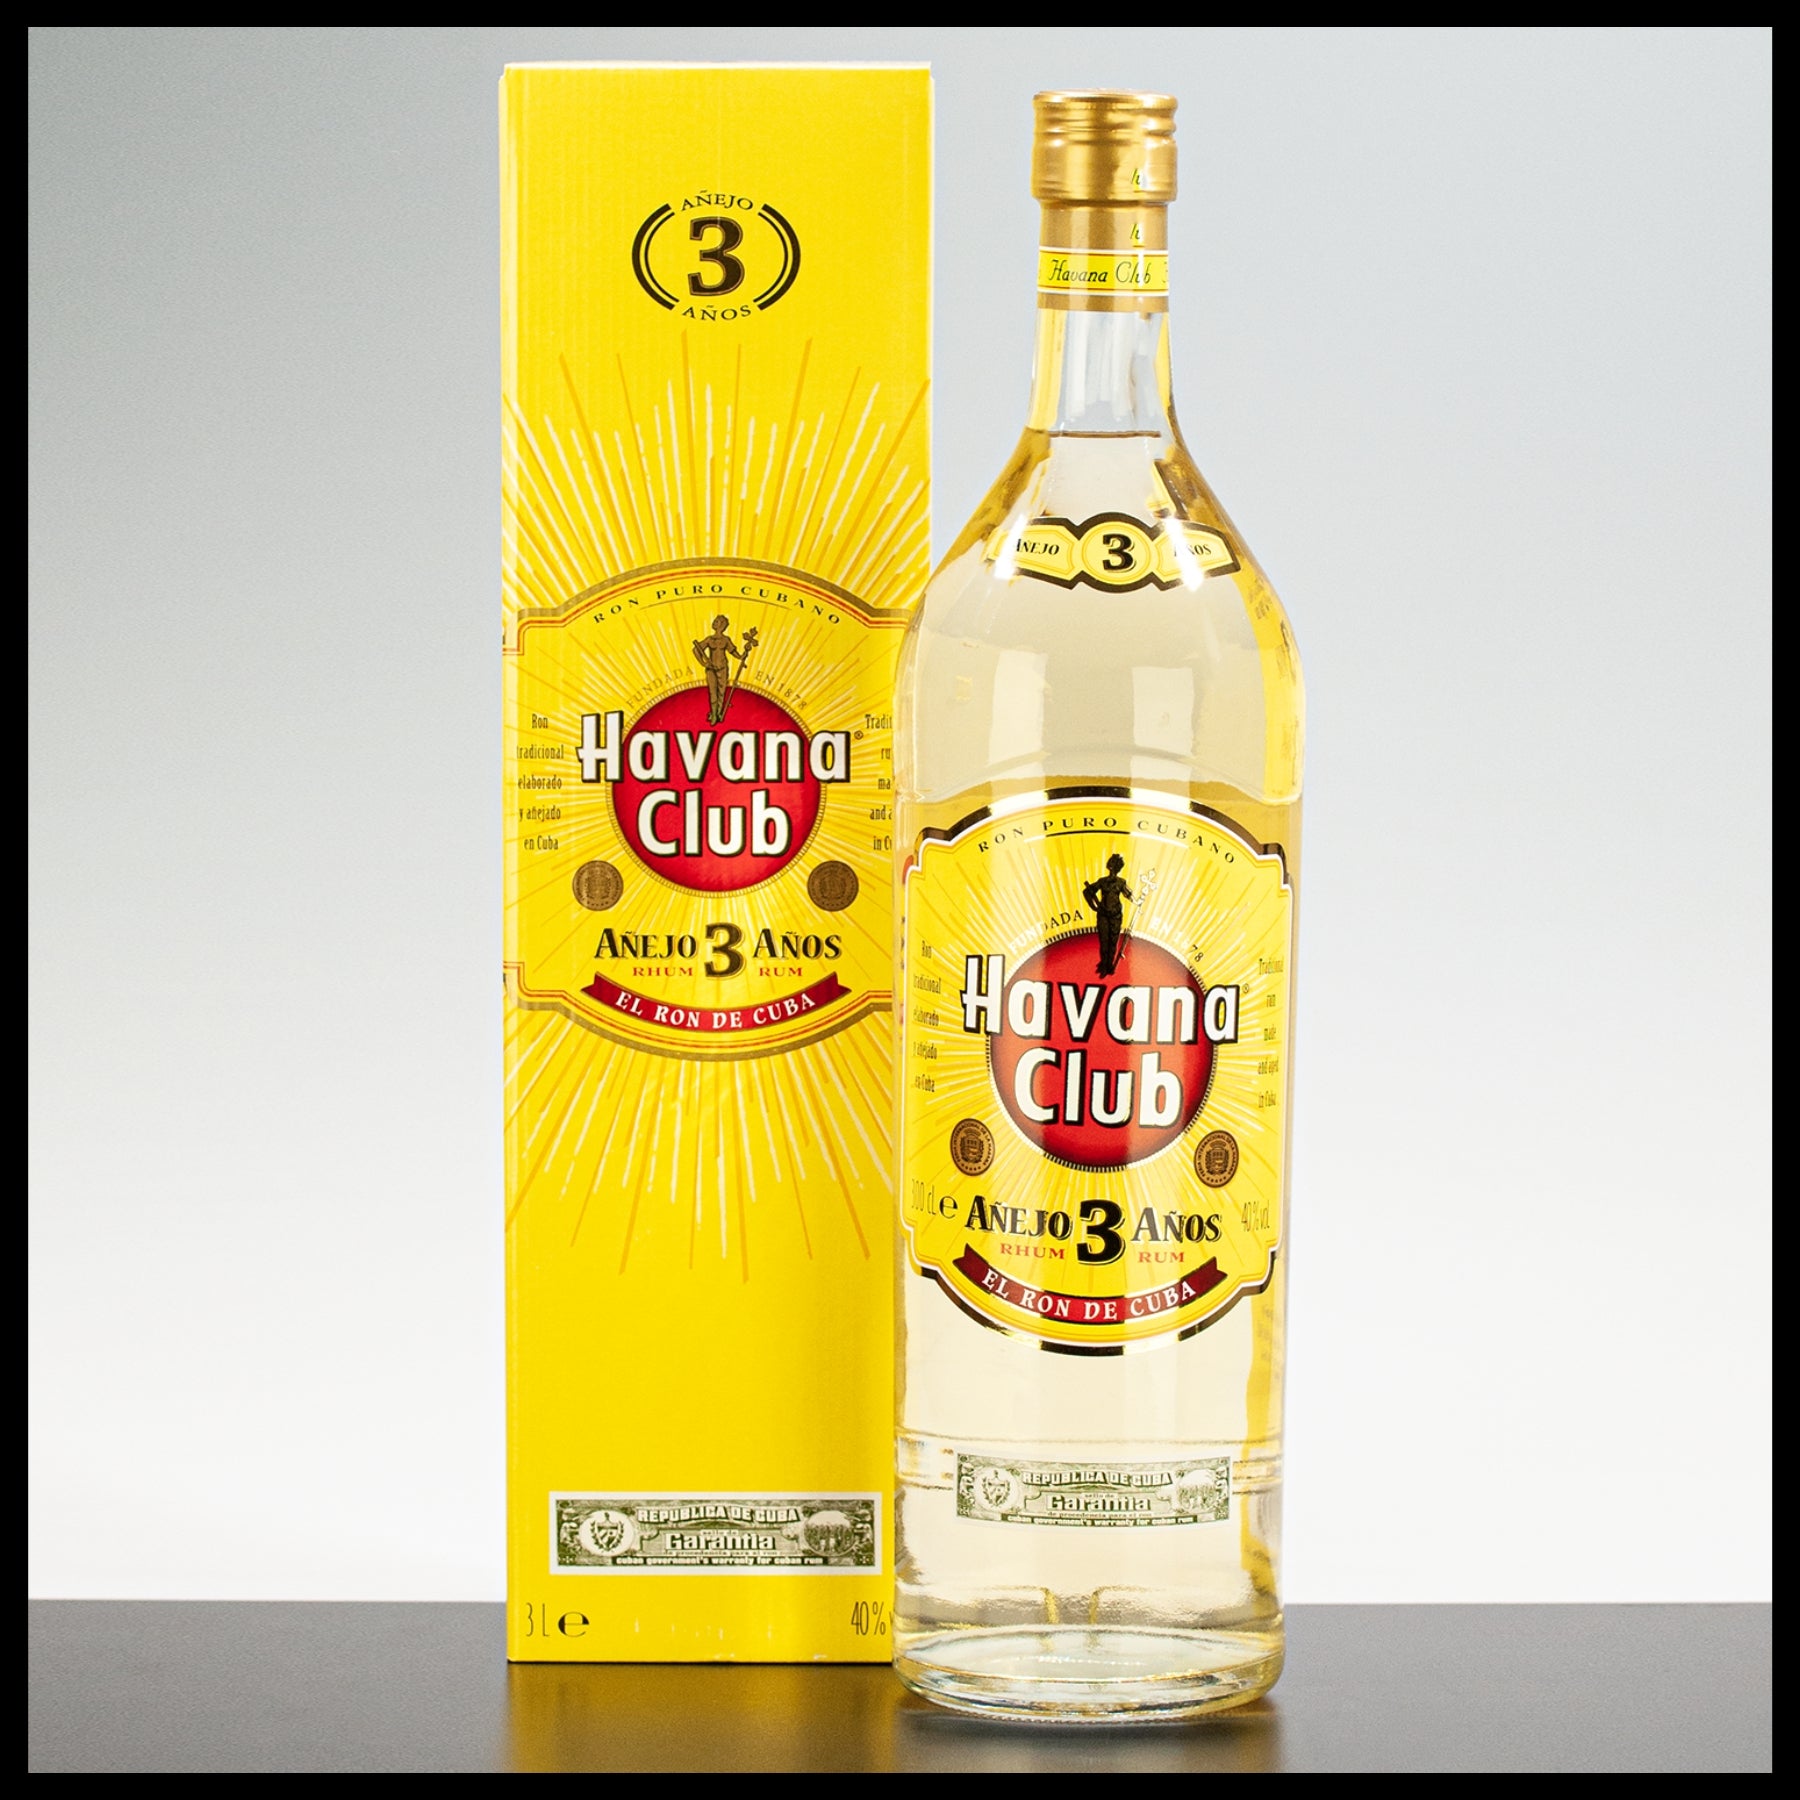 Havana Club Anejo 3 Anos Rum 3L - 40% Vol. - Trinklusiv